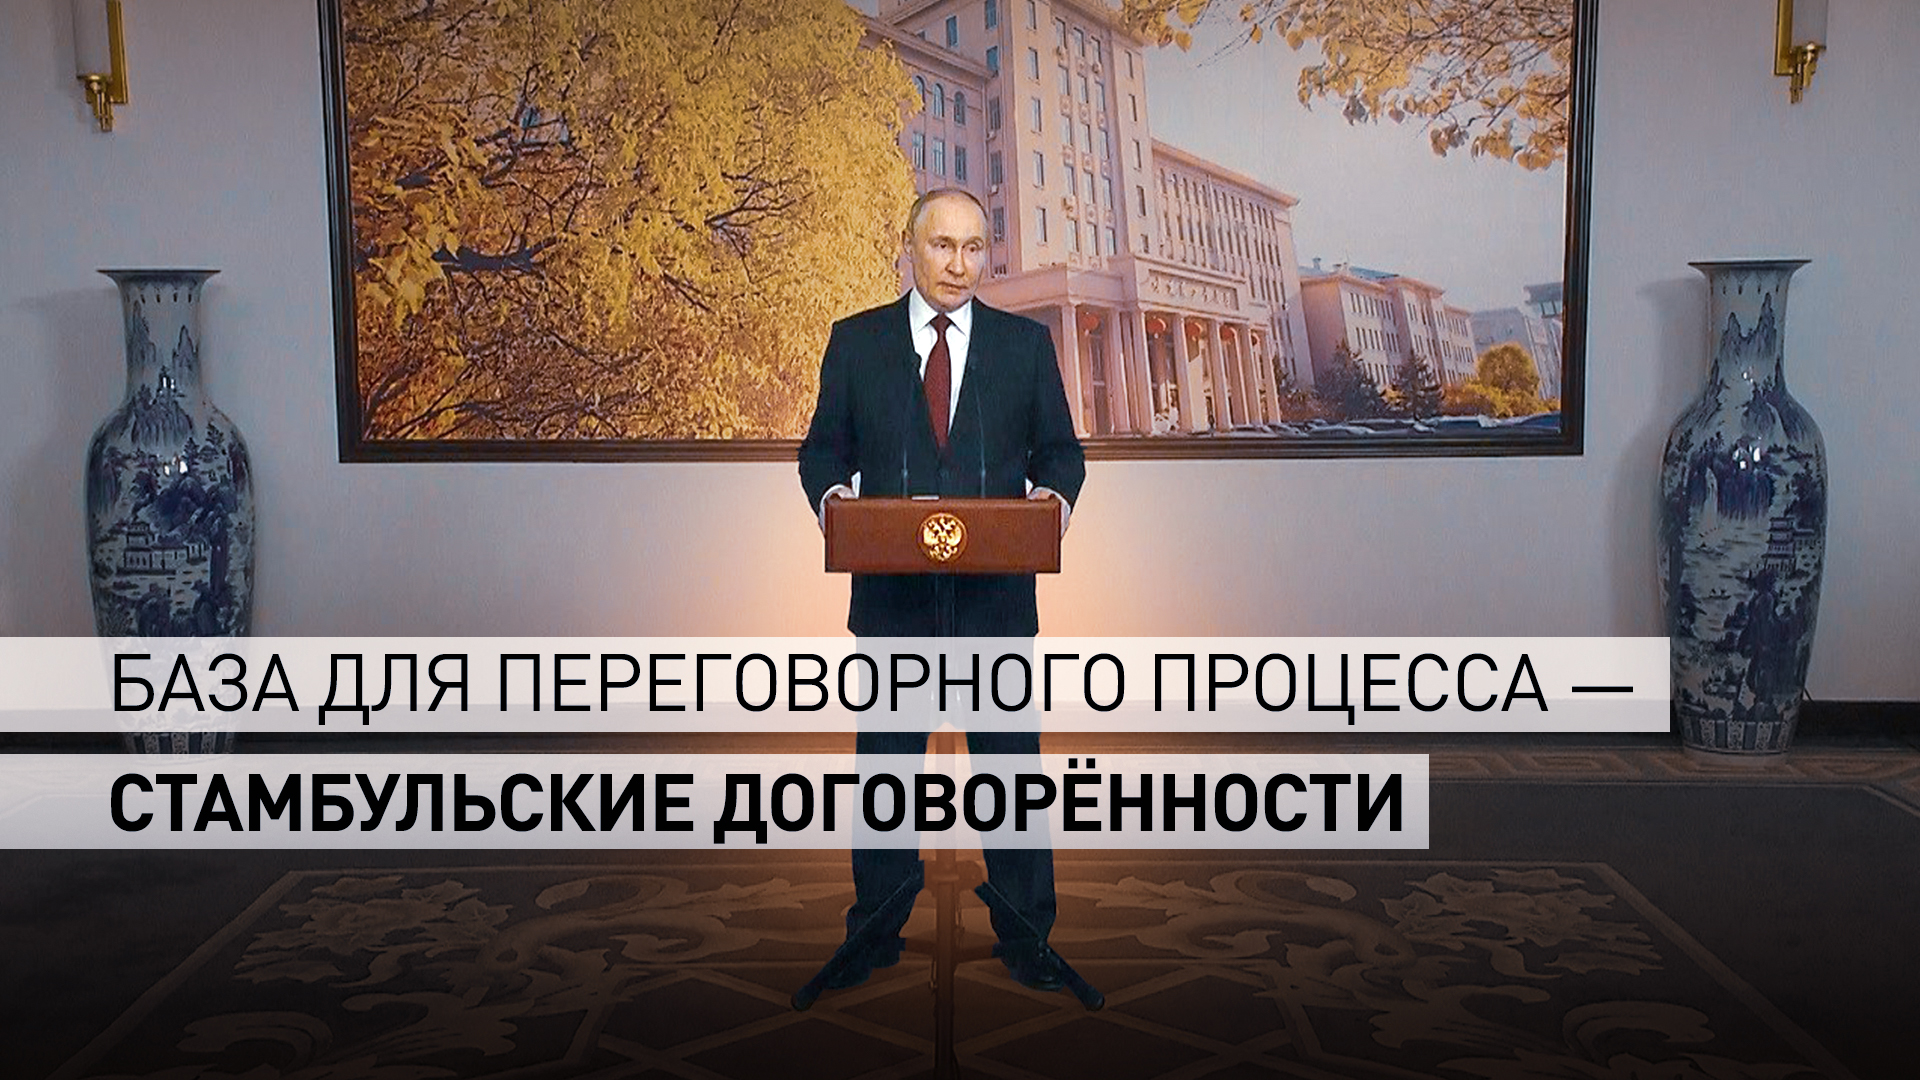 «Мы должны понять, с кем и как мы можем иметь дело»: Путин — о мирном разрешении конфликта